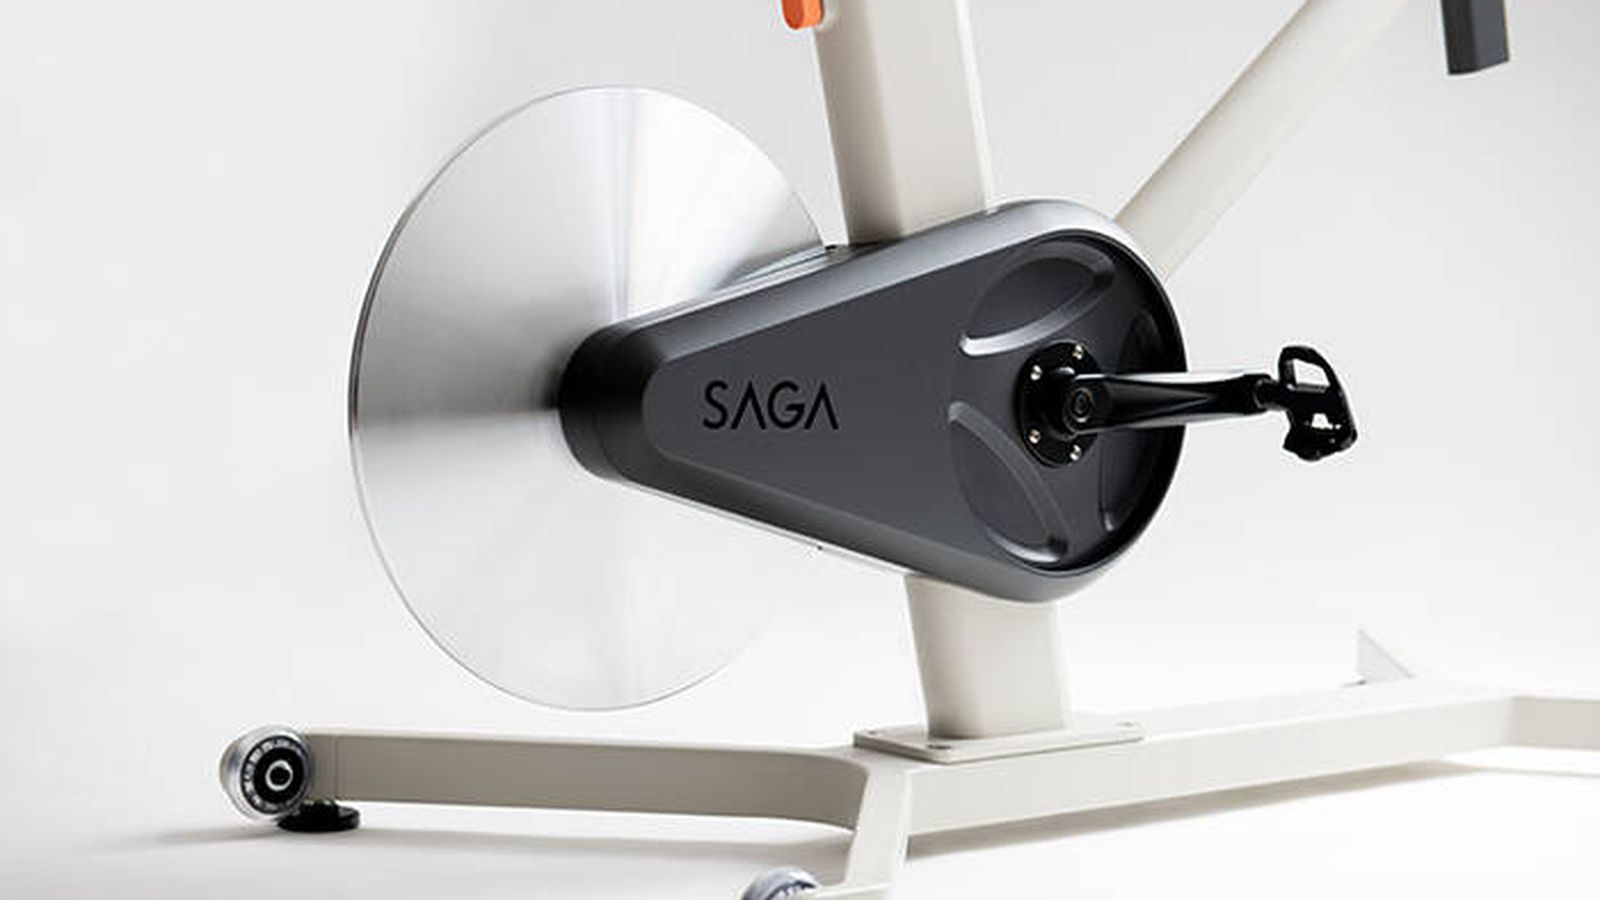 Los pedales ofrecen un sistema que simula el efecto en la pierna del terreno virtual. (Saga)